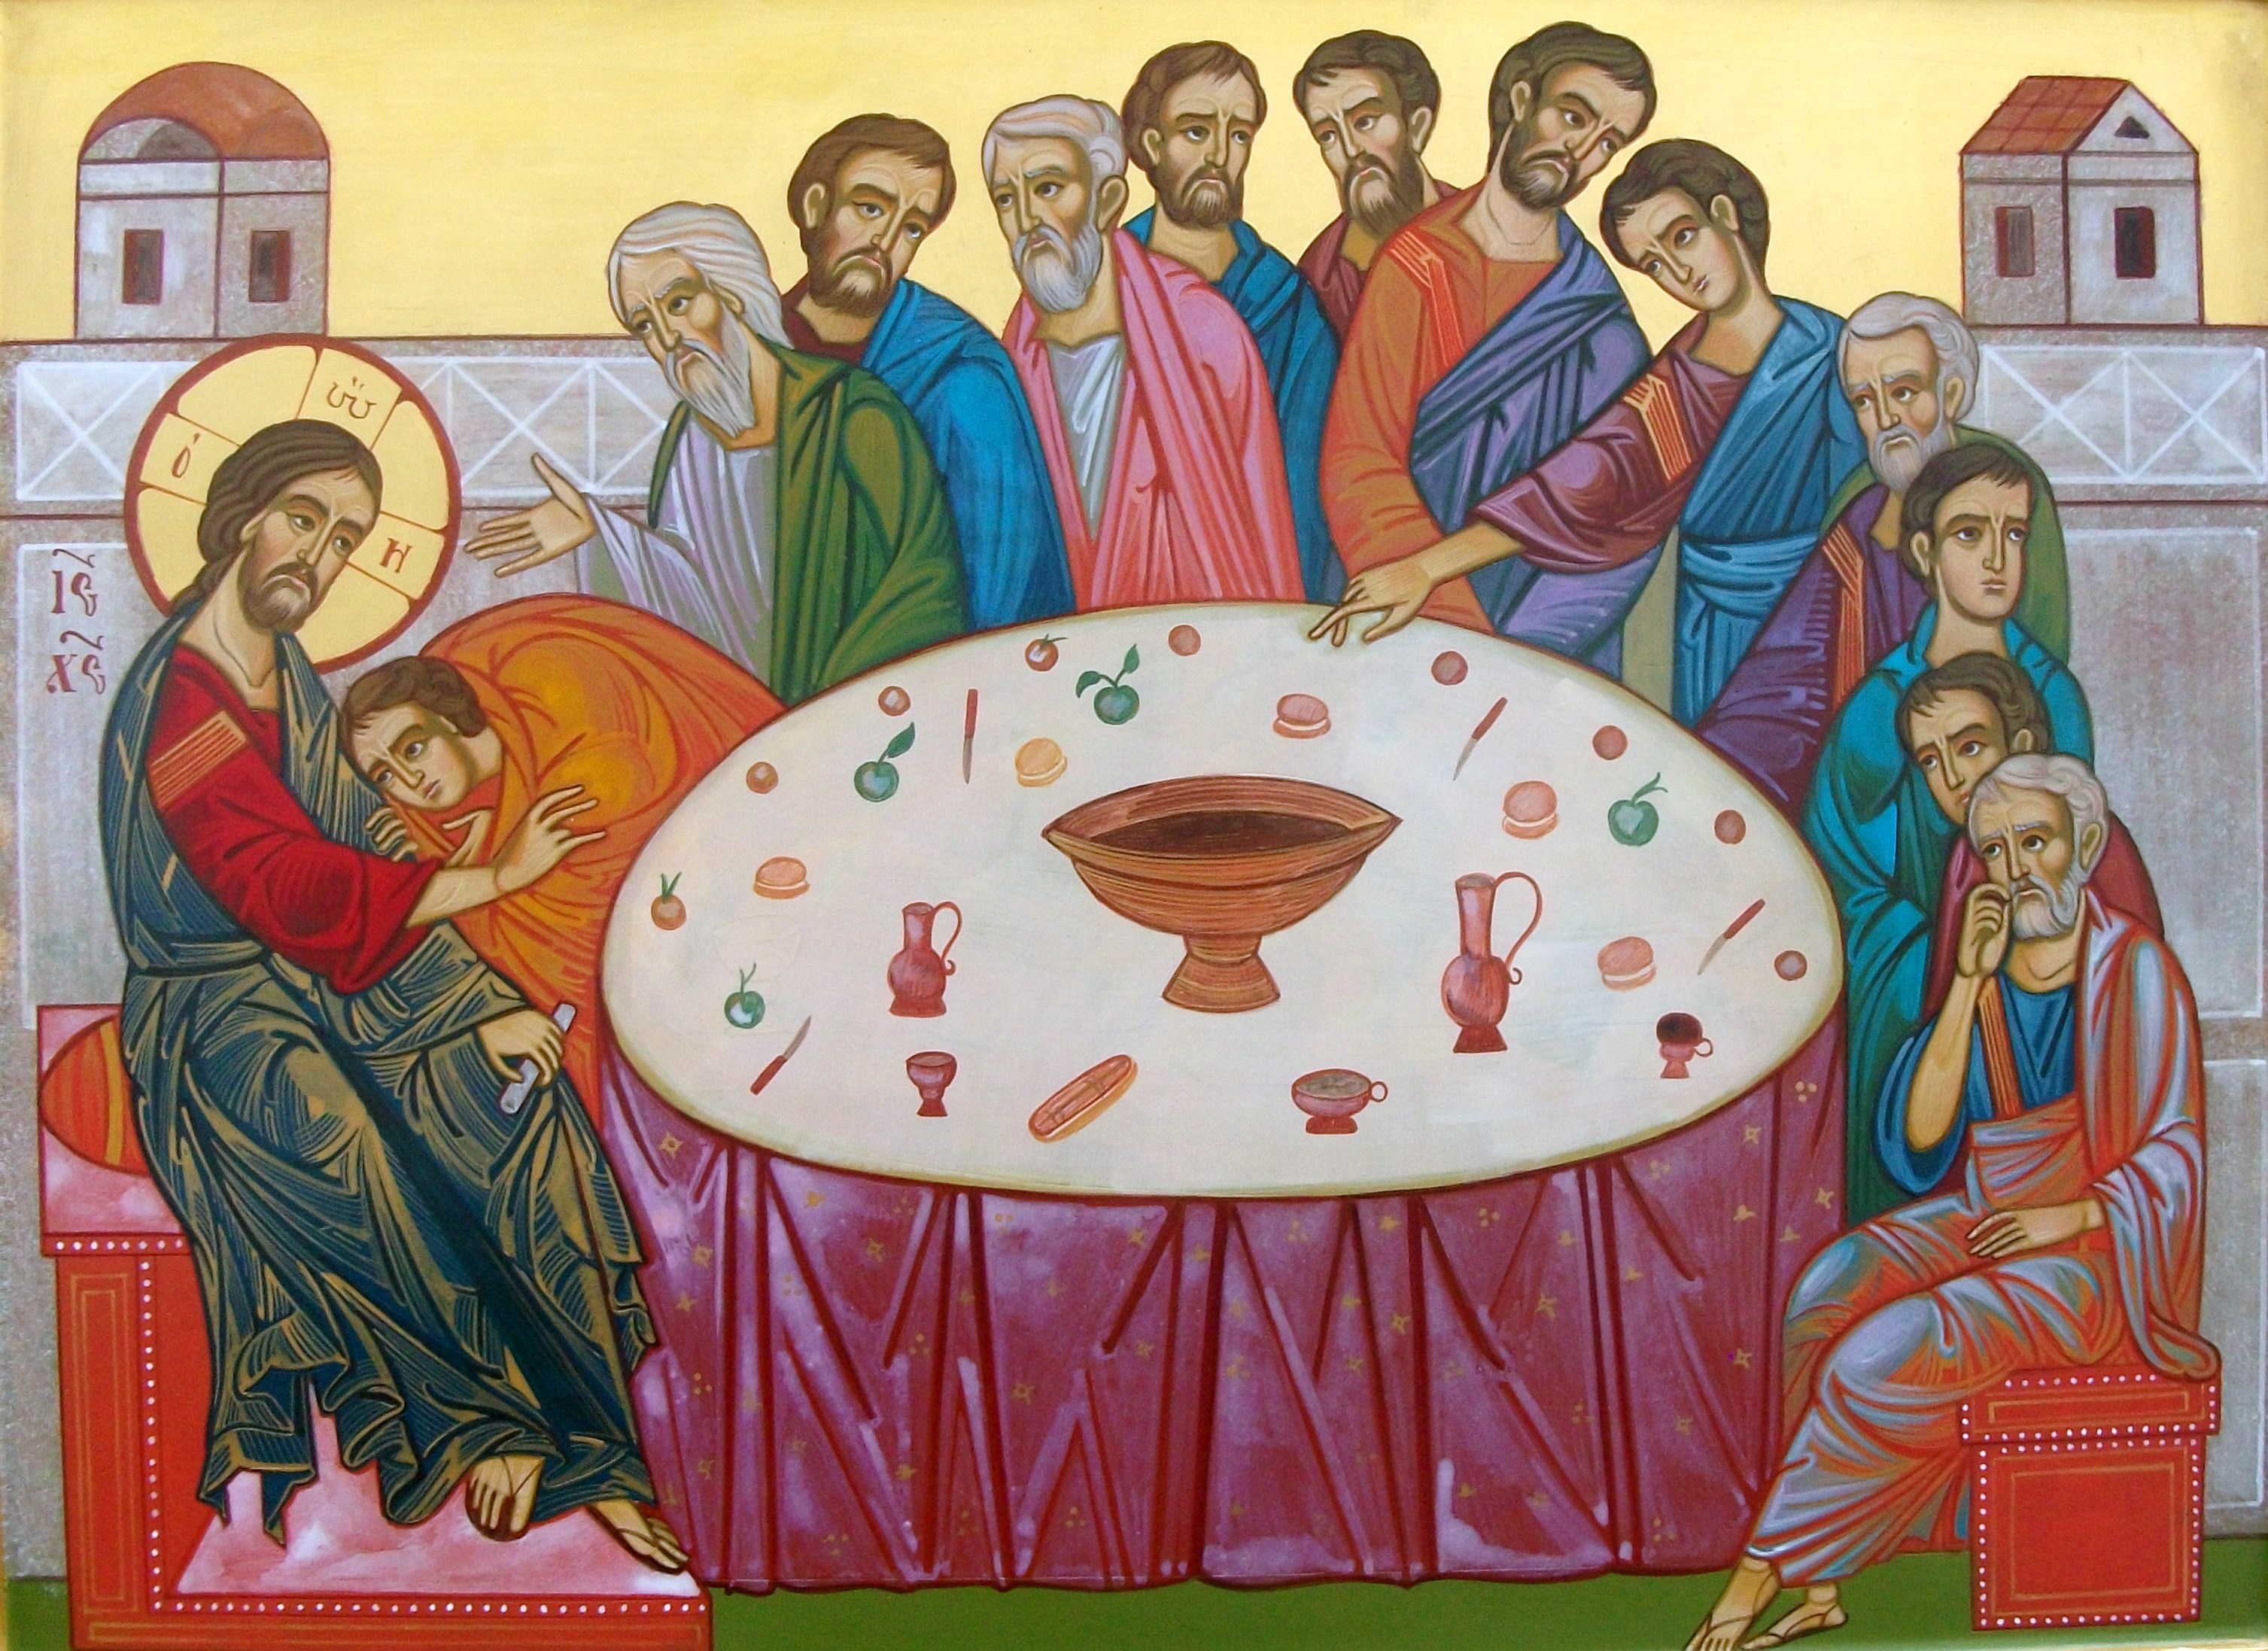 l'immagine rappresenta l'ultima cena che Cristo fece con gli apostoli prima di essere arrestato e crocifisso